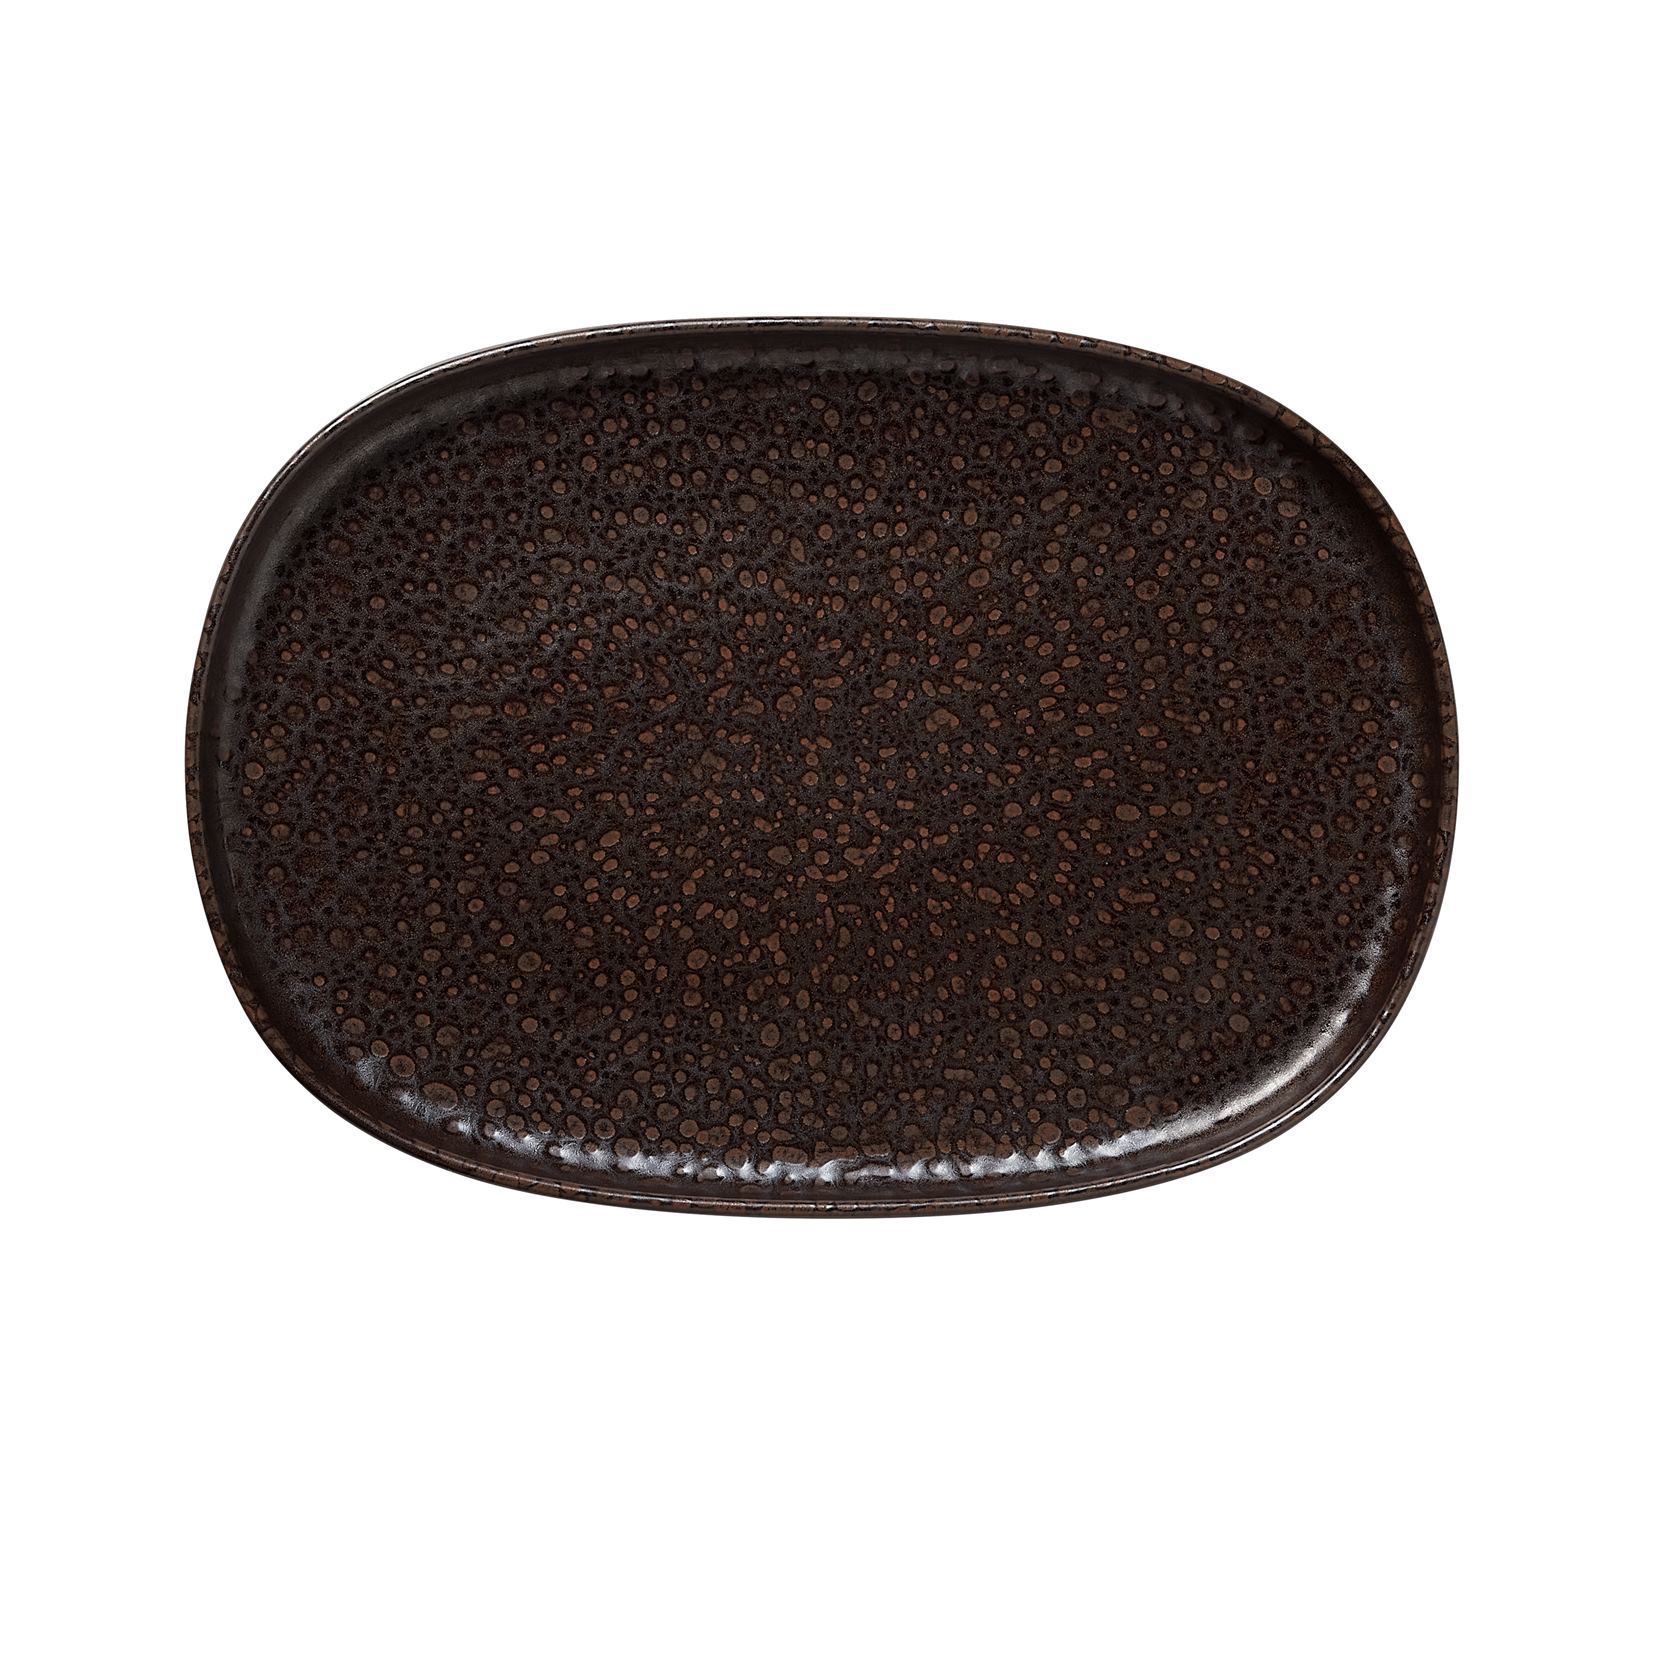 ROCKZZERO® Platte, 33 x 23 cm, Serie metallic brown, Steinzeug